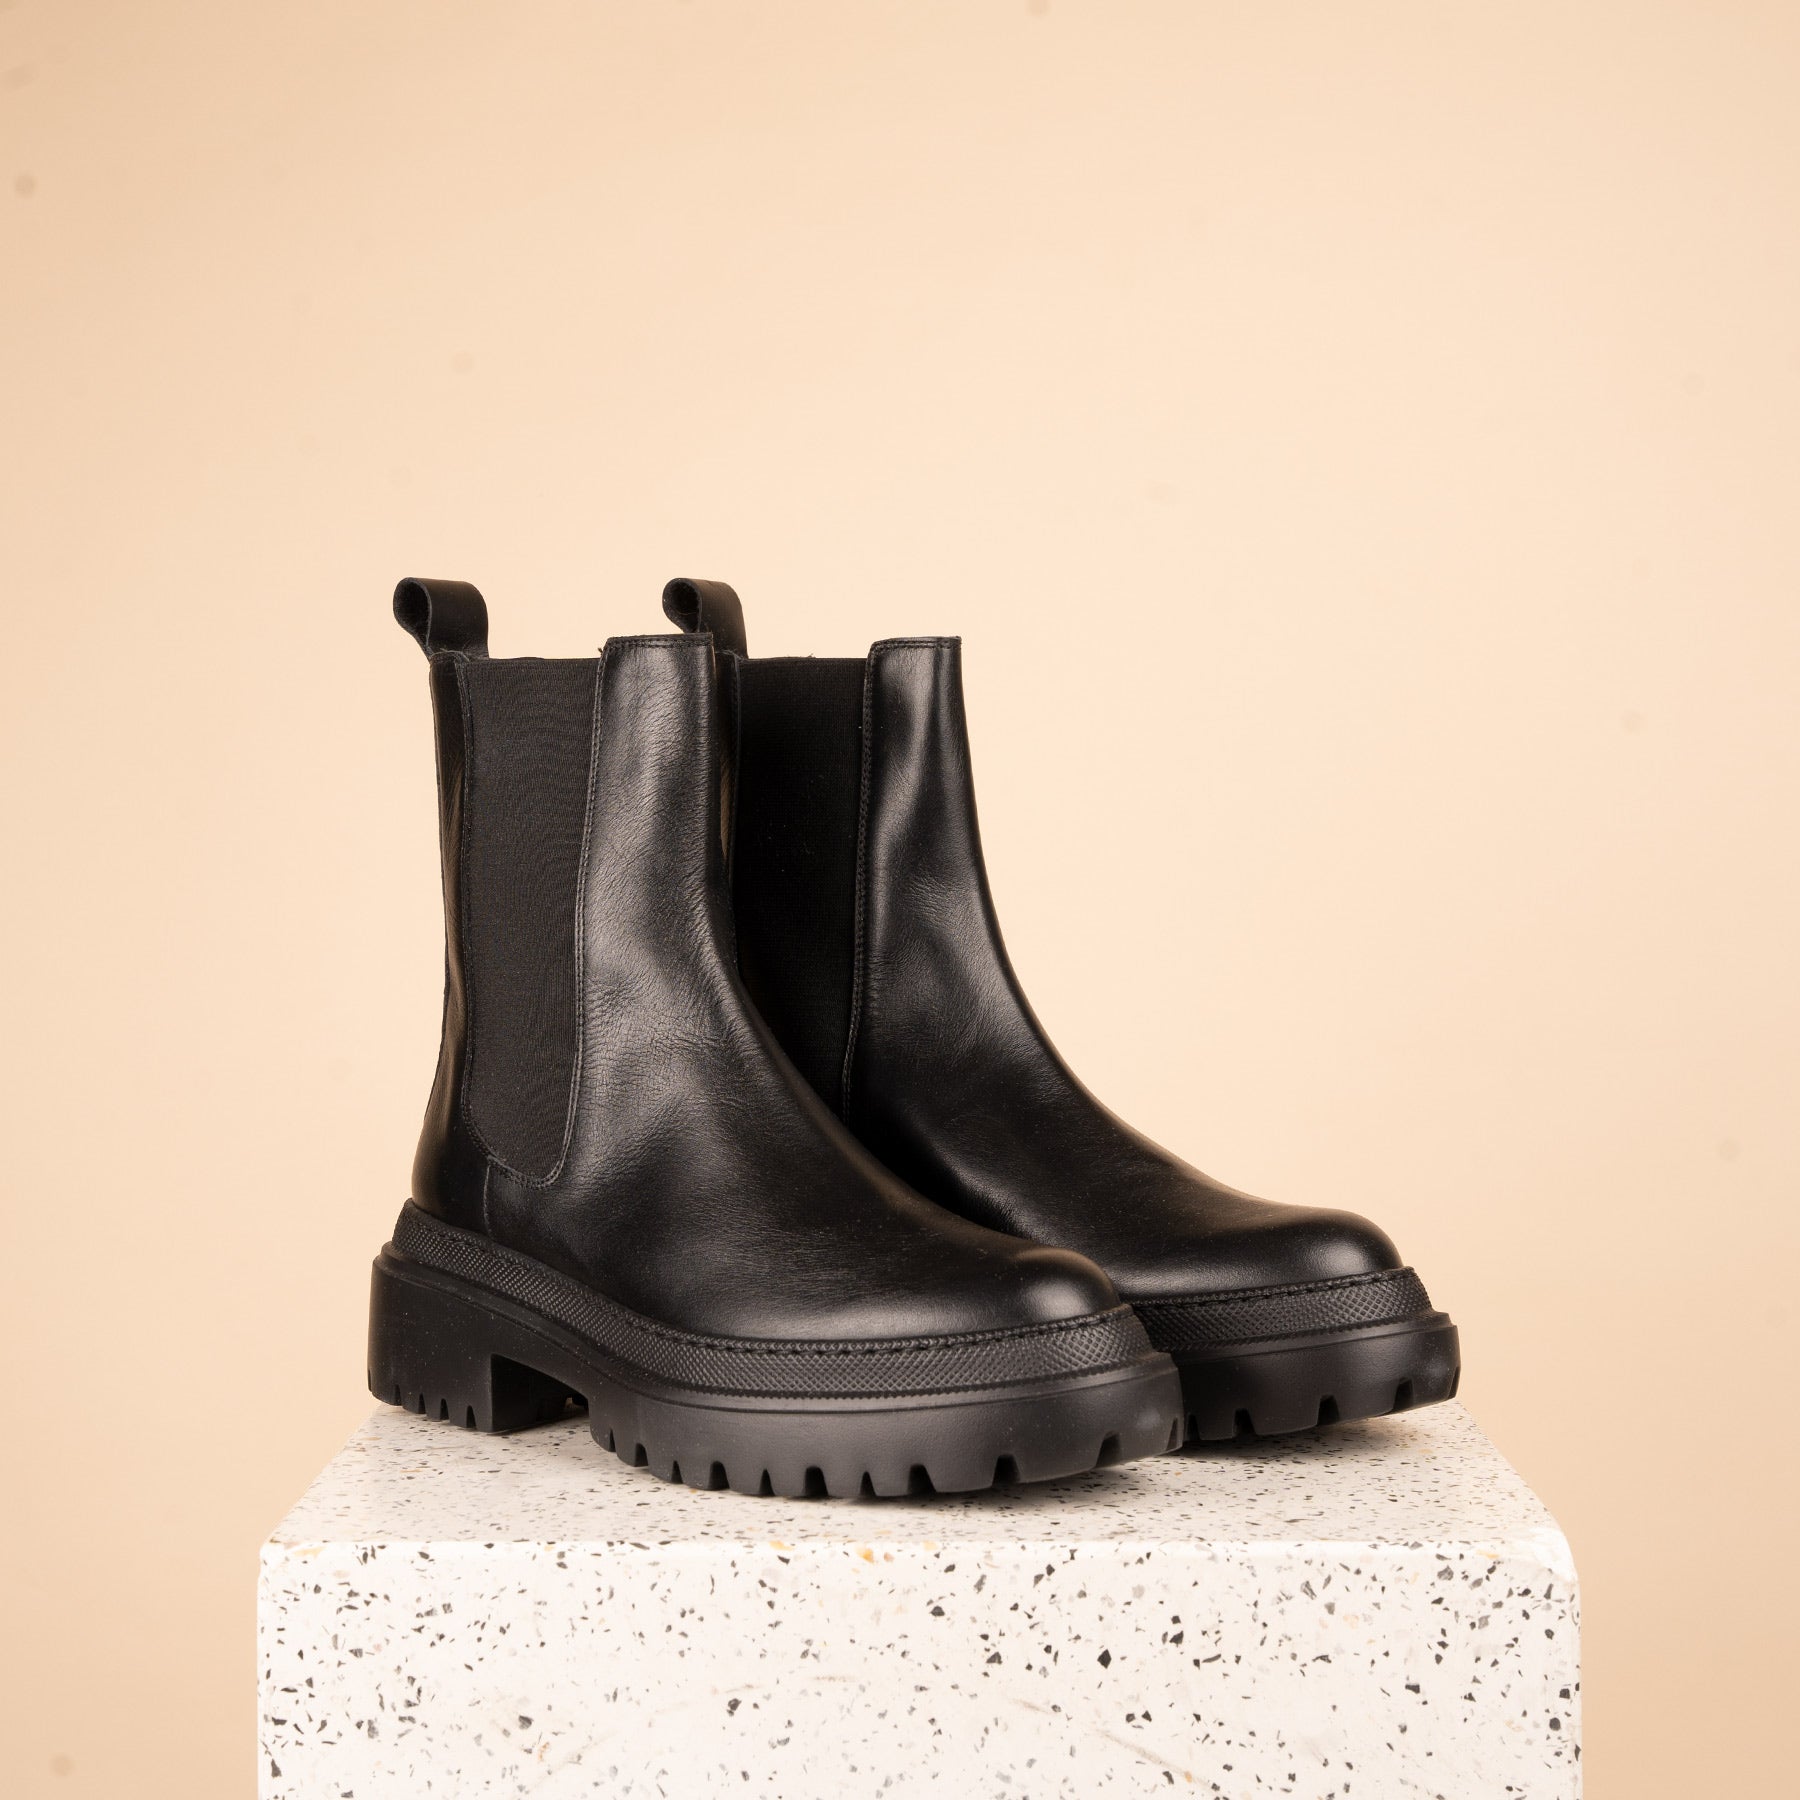 Monza - Black Calf Leather SAMPLE SALE - FINAL SALE